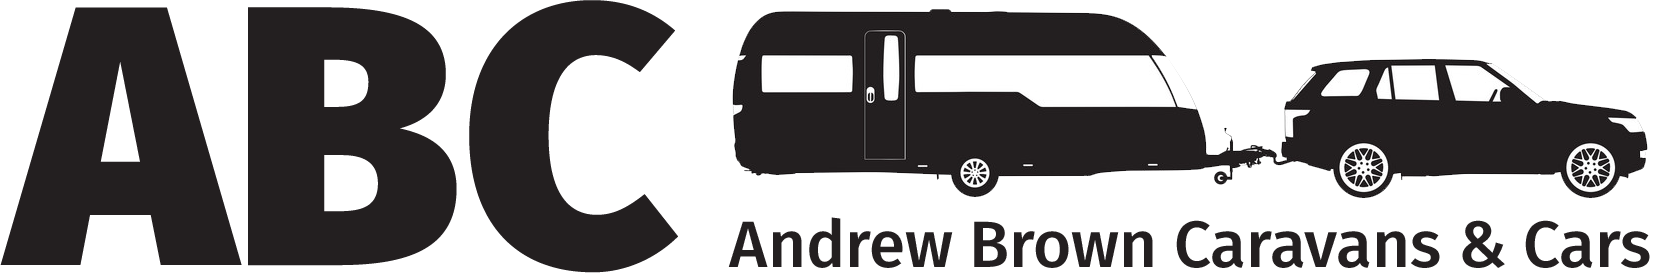 Andrew Brown Caravans & Cars